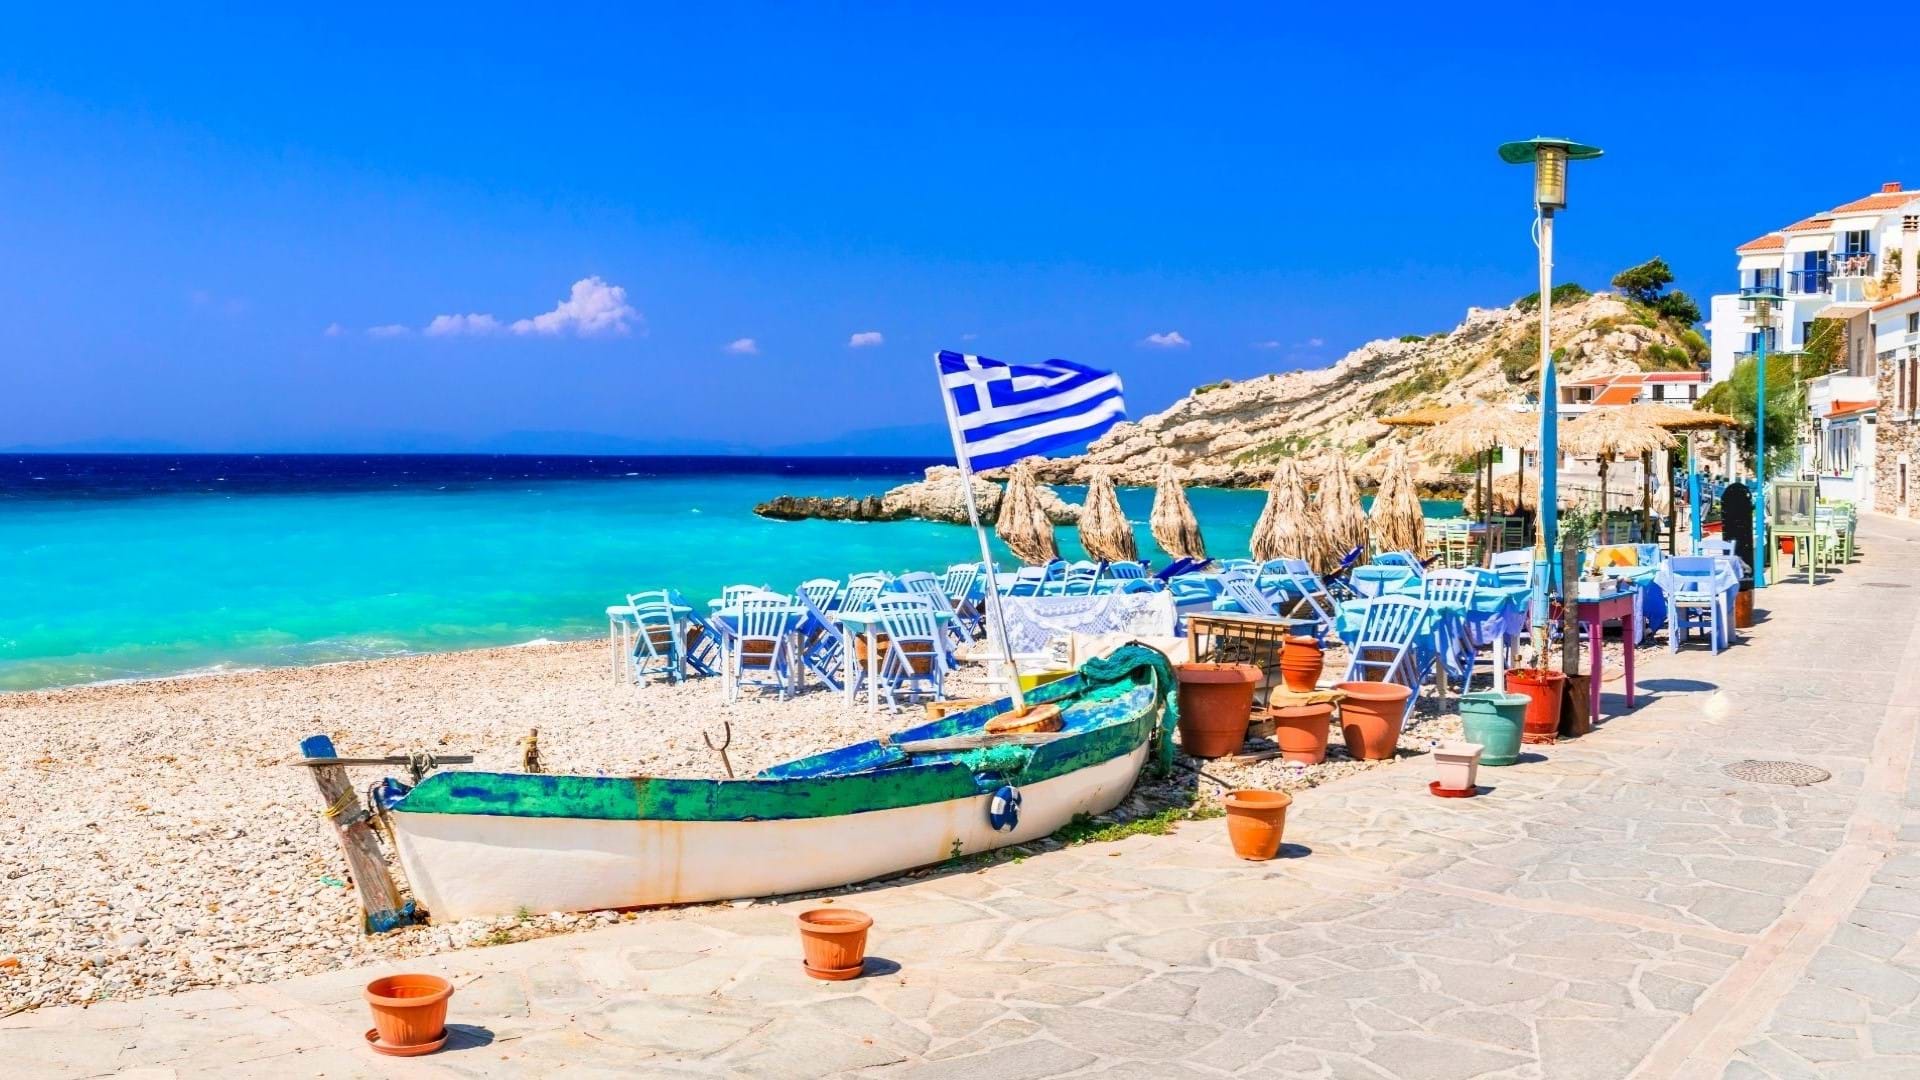 Ostrvo Samos u Grčkoj, jedno od najlepših letovalista u ovoj zemlji. Plaža u glavnom gradu sa prelepom bojom mora  i divnim belim kucama na obali.